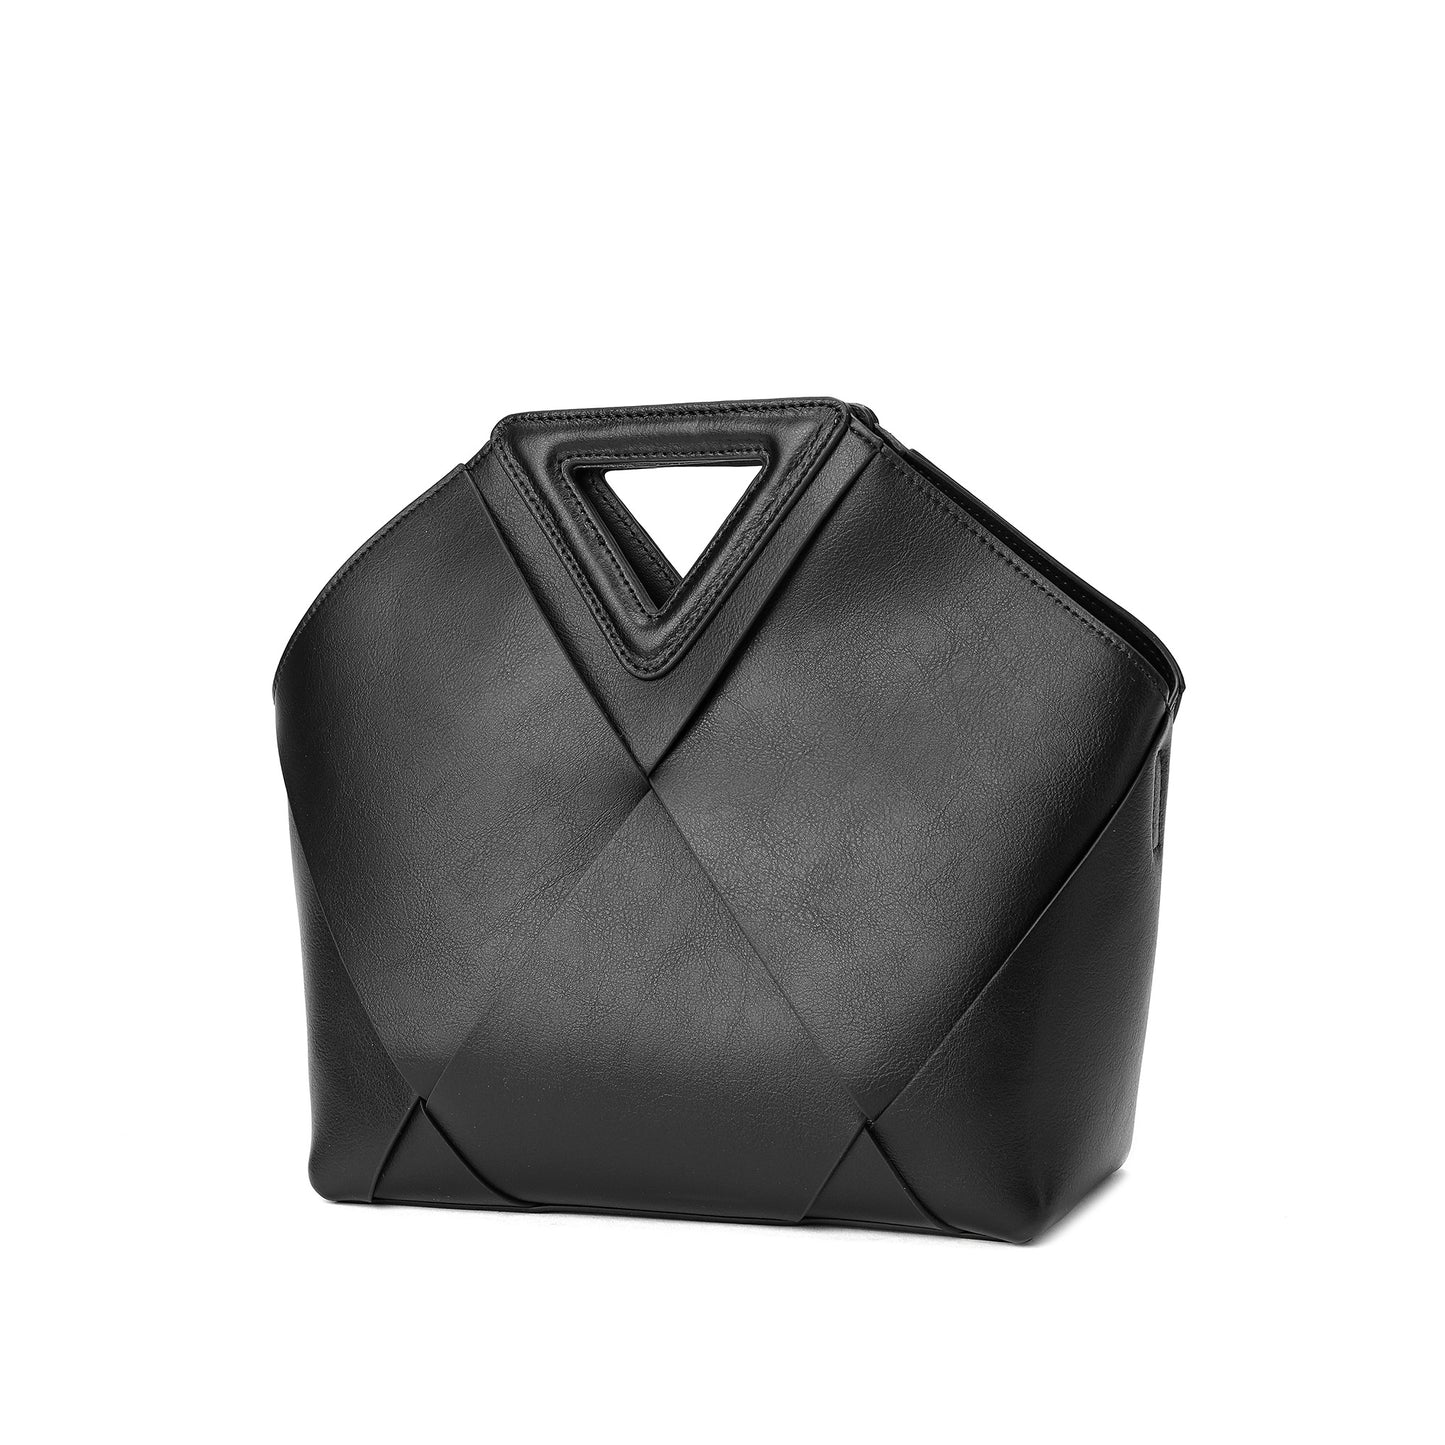 Woven Smooth Leather Satchel/ Shoulder Bag